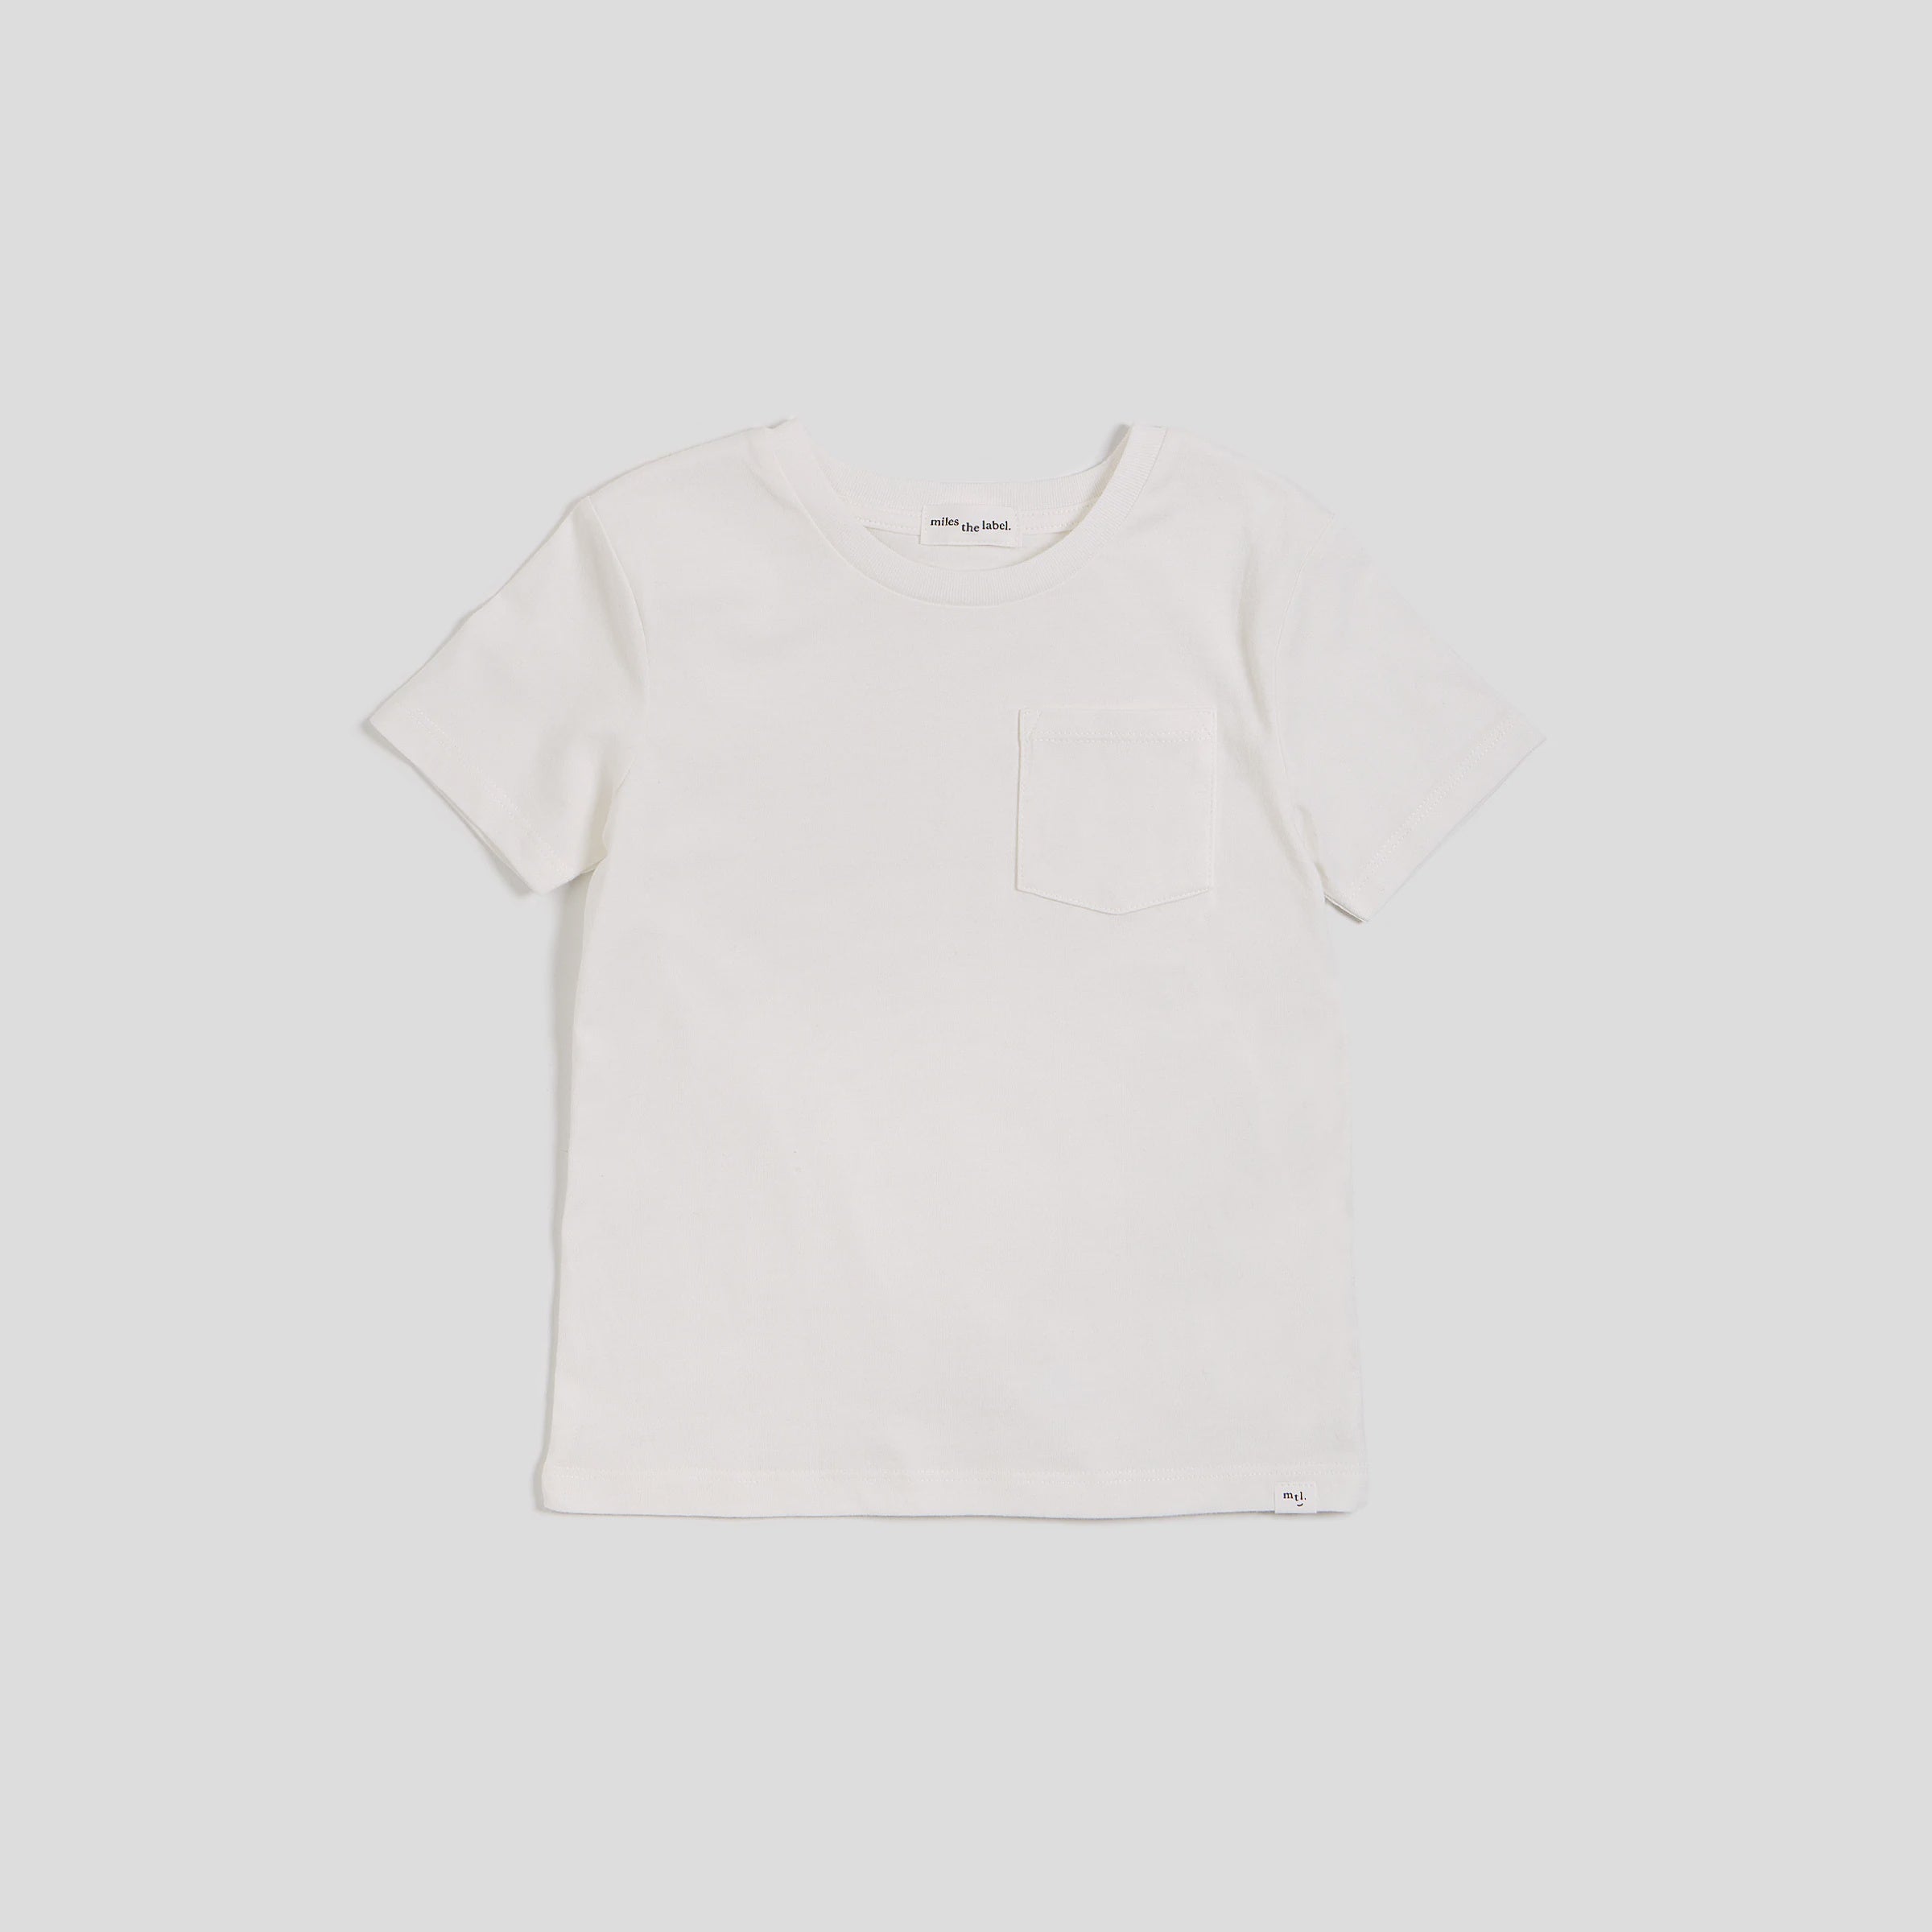 White Unisex Tshirt